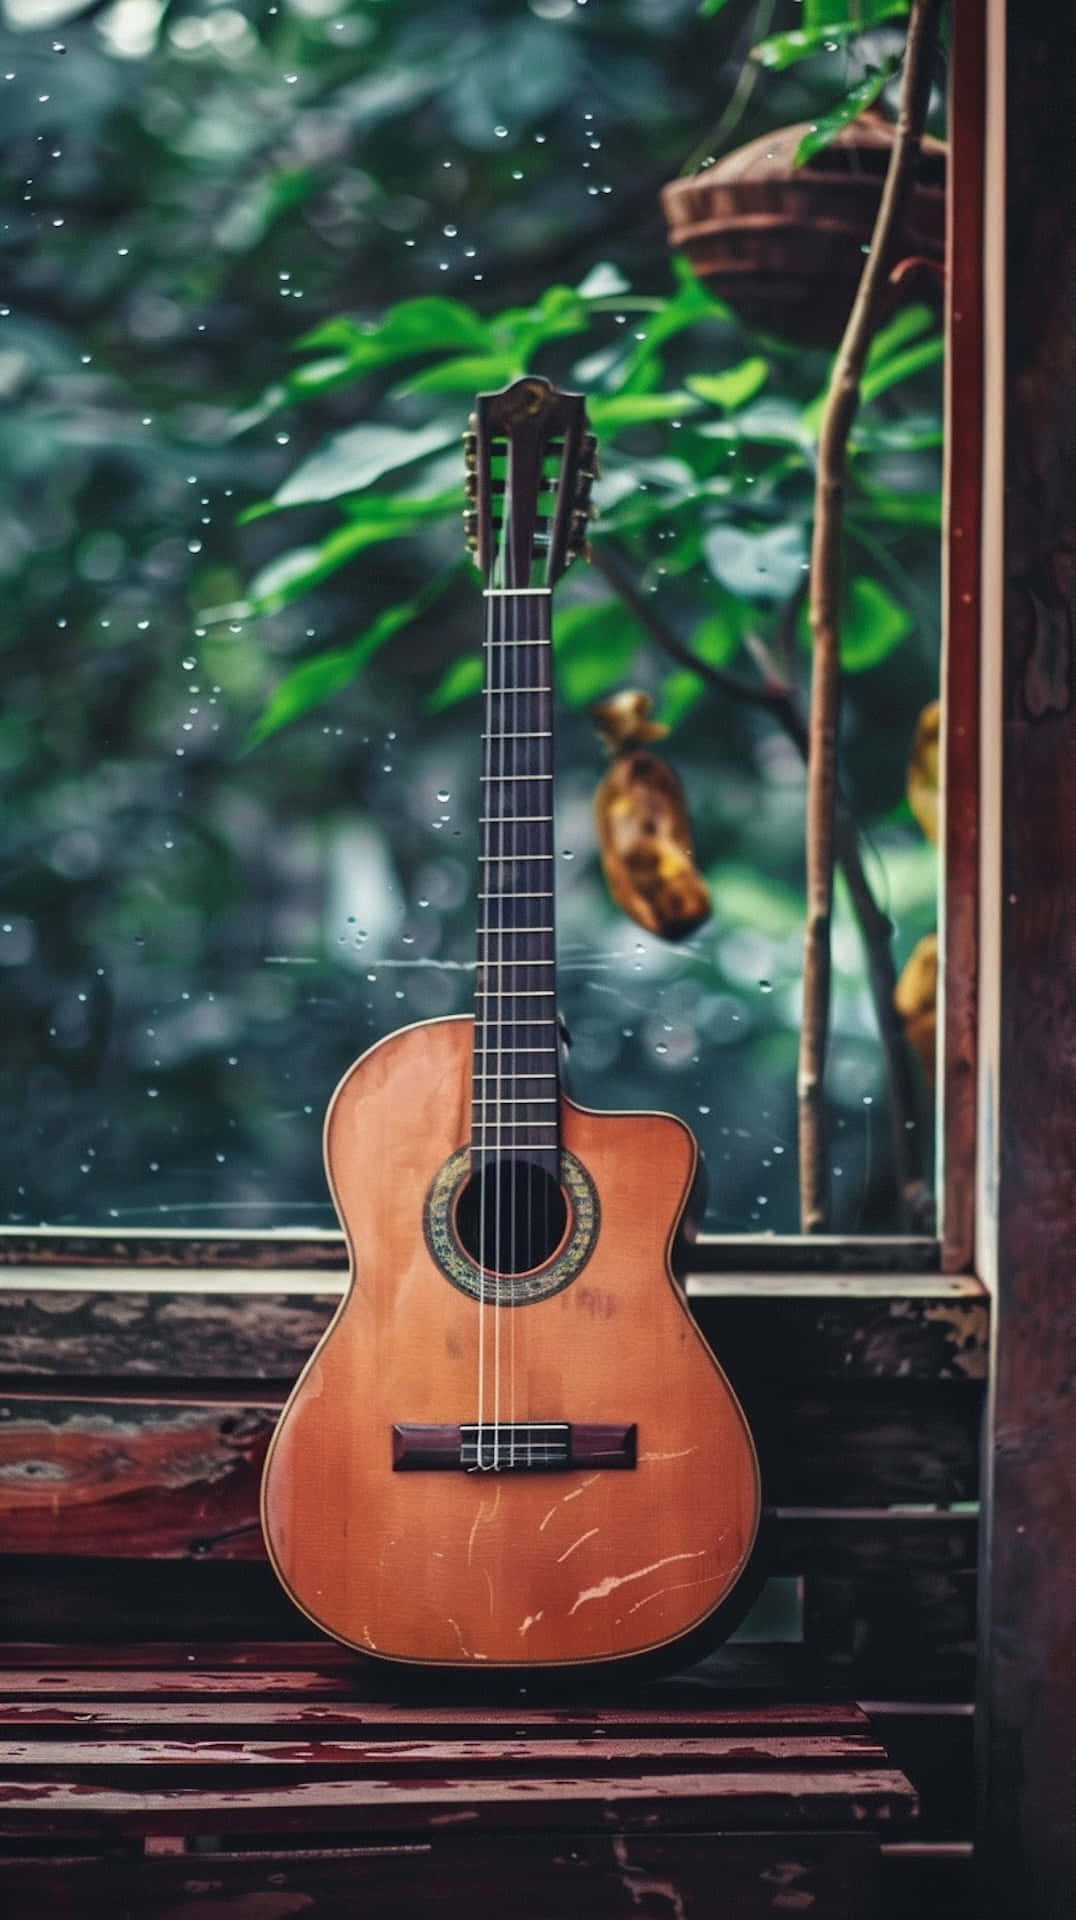 Rainy Day Guitar Melancholy Background